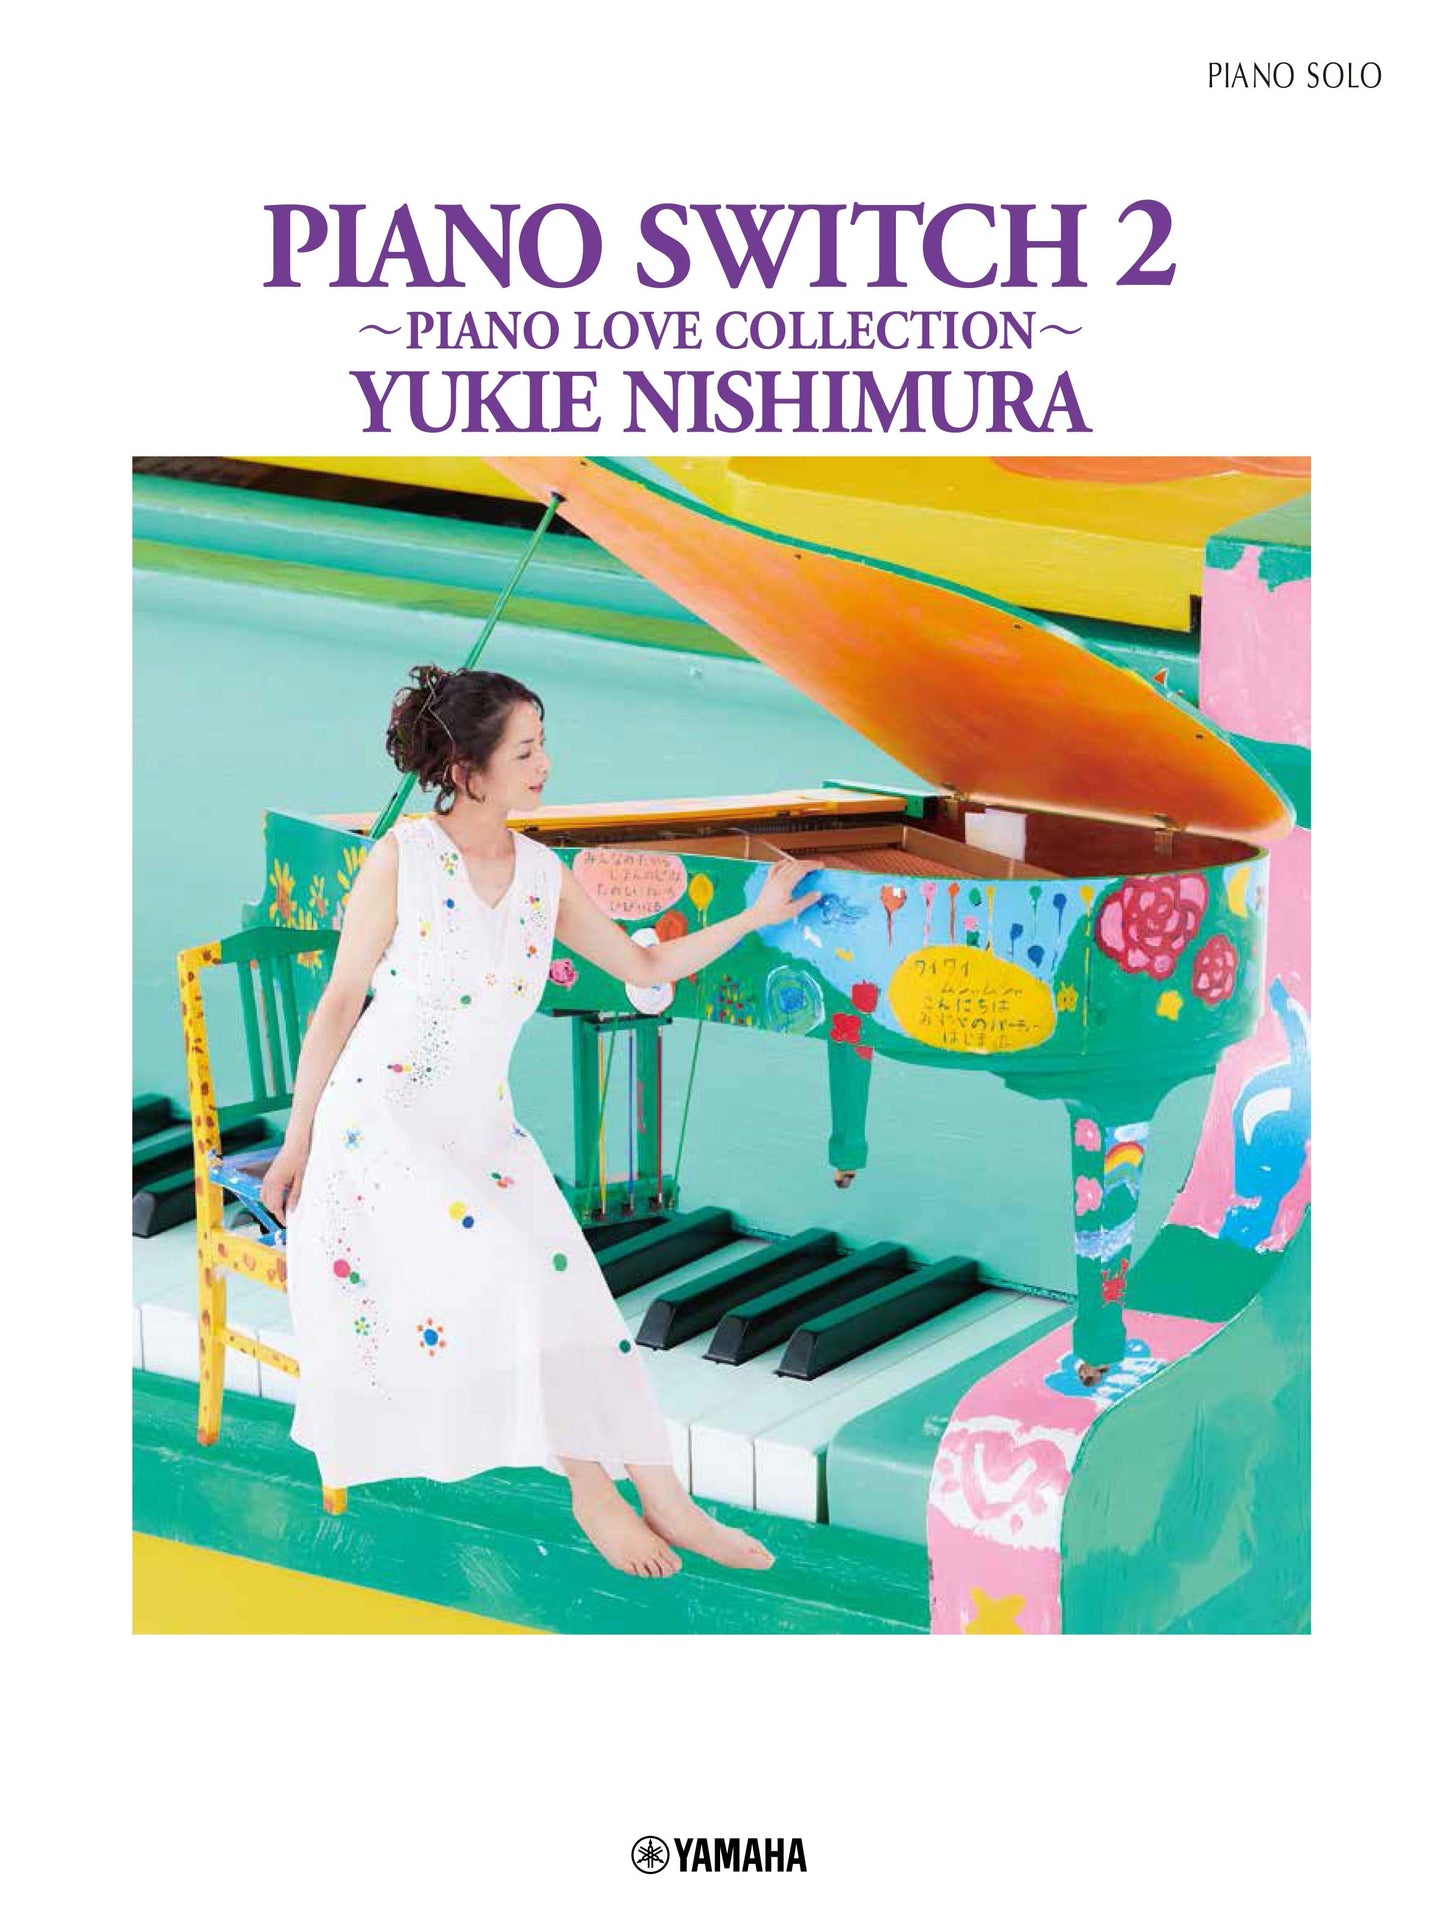 ピアノソロ 西村由紀江 「PIANO SWITCH 2 ～PIANO LOVE COLLECTION～」